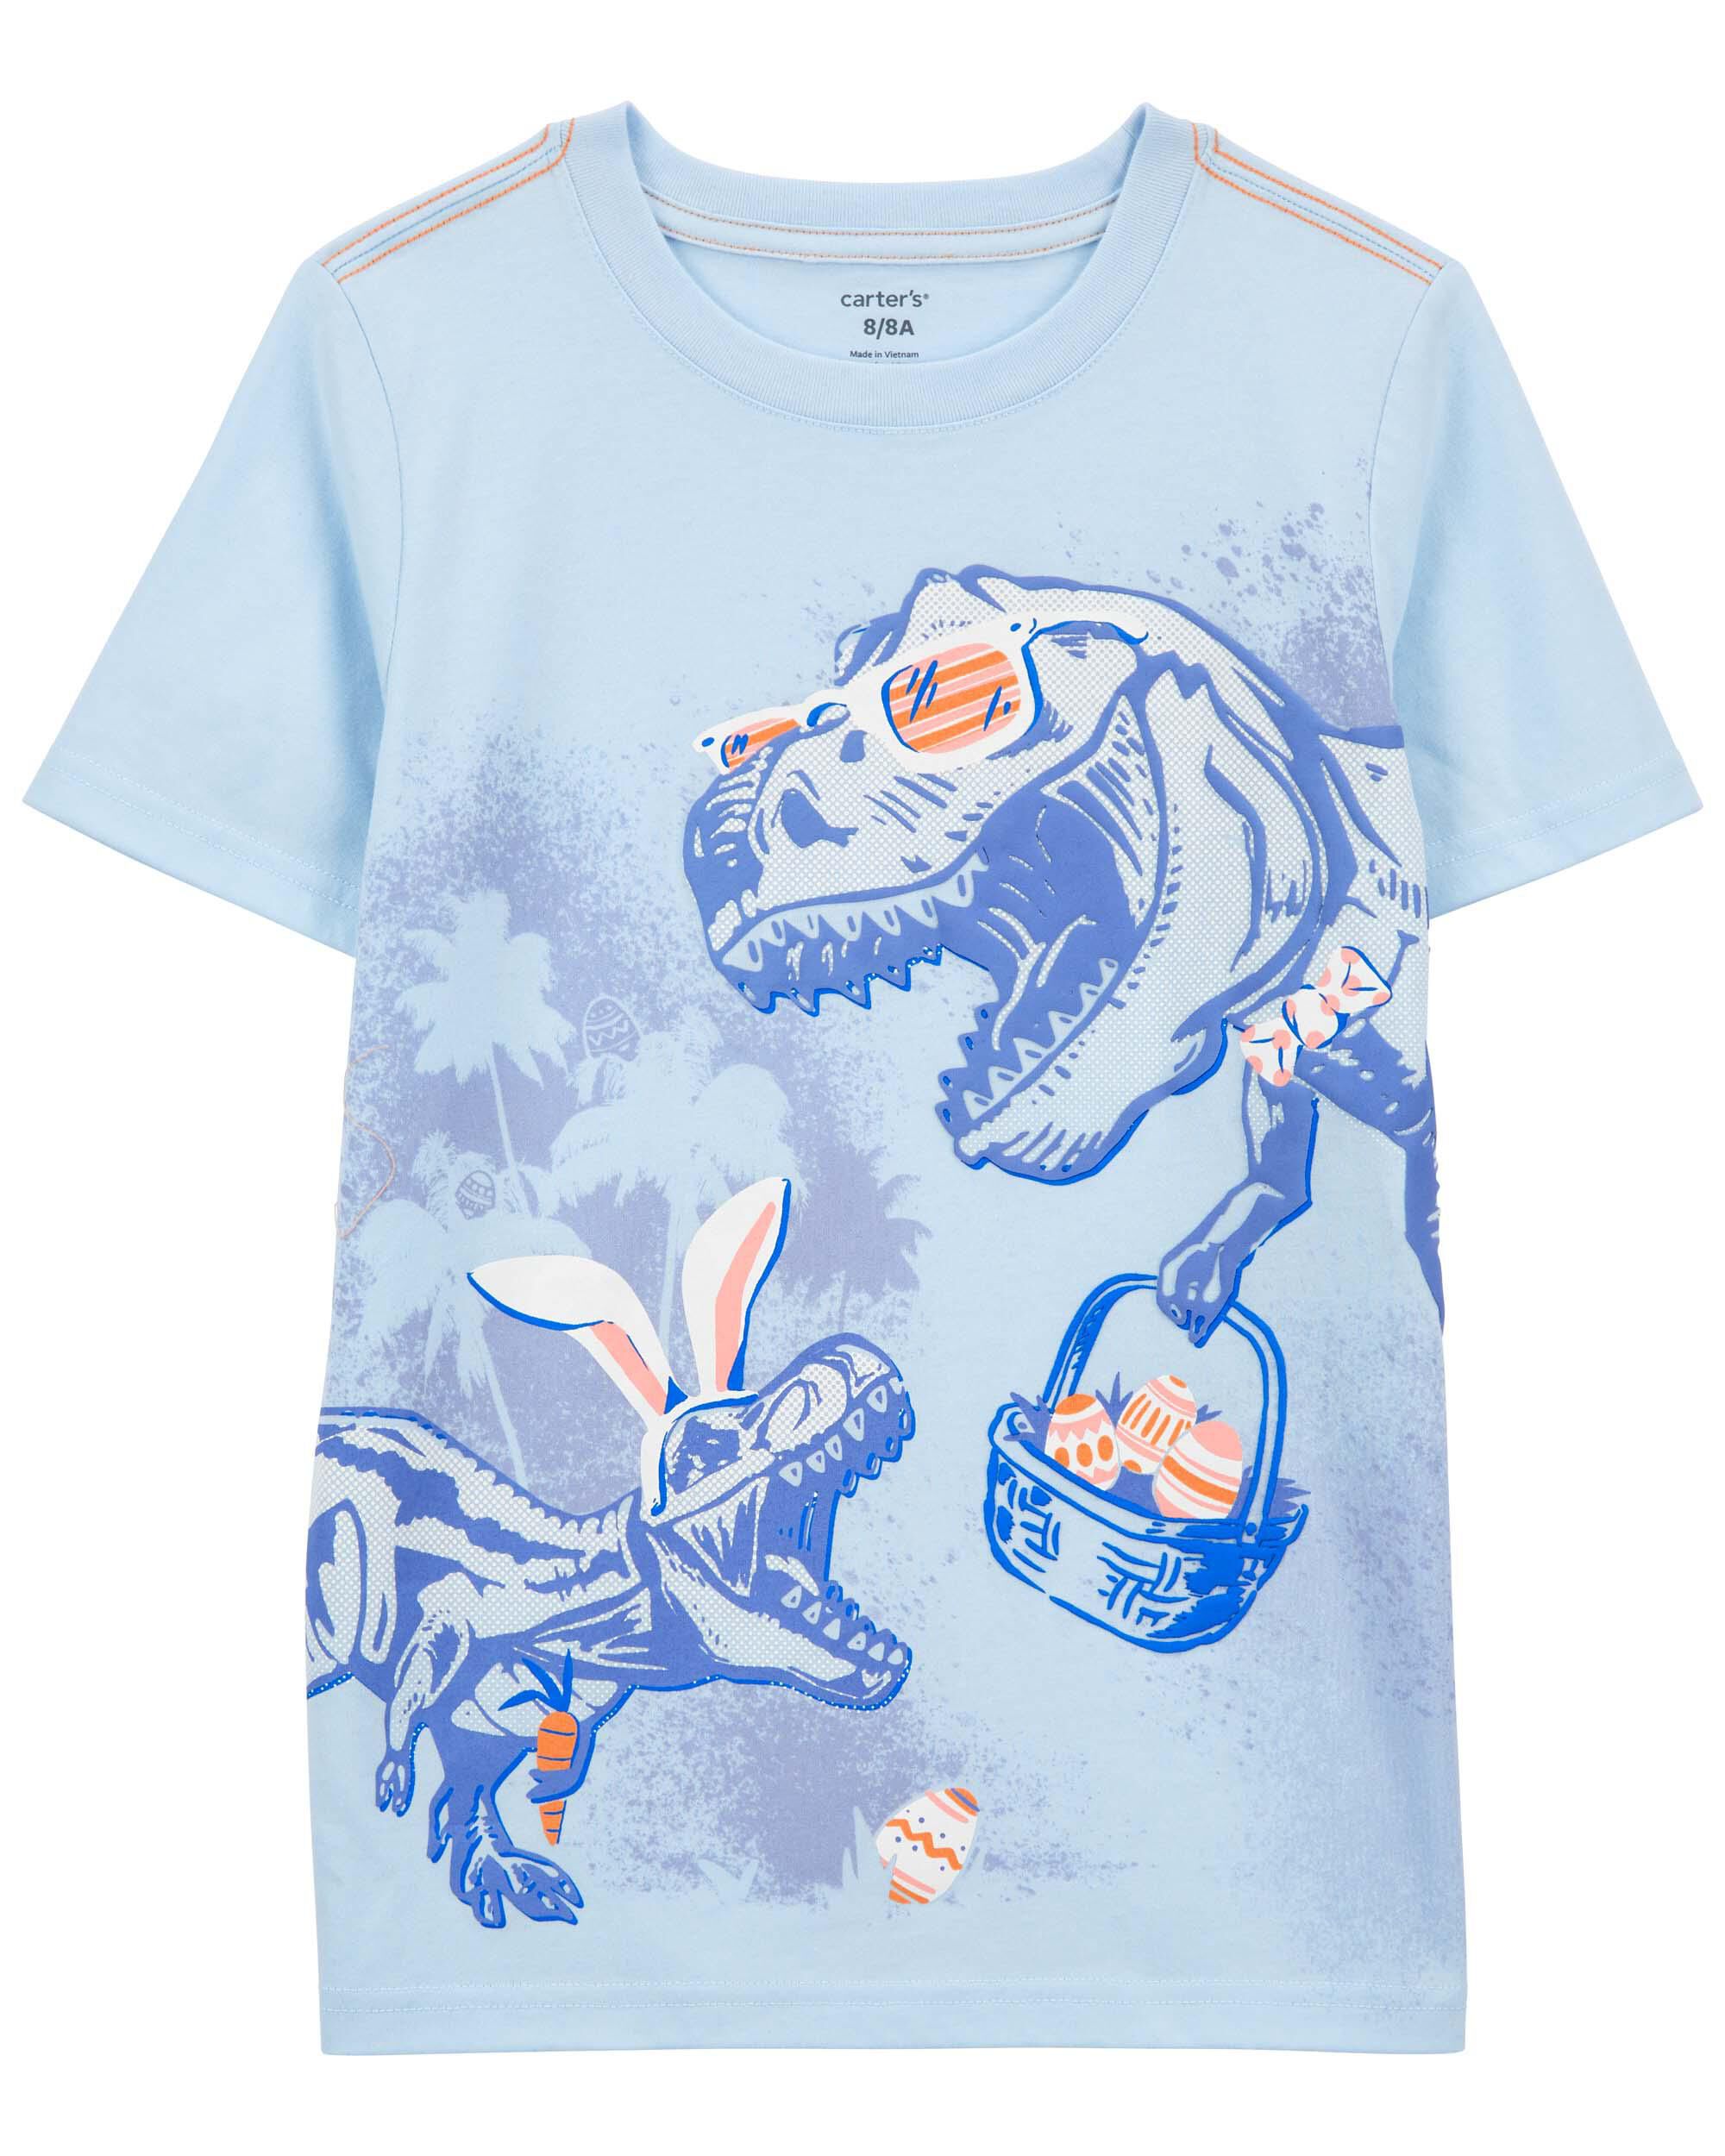 Детская трикотажная футболка с пасхальным кроликом и динозавром Carter's